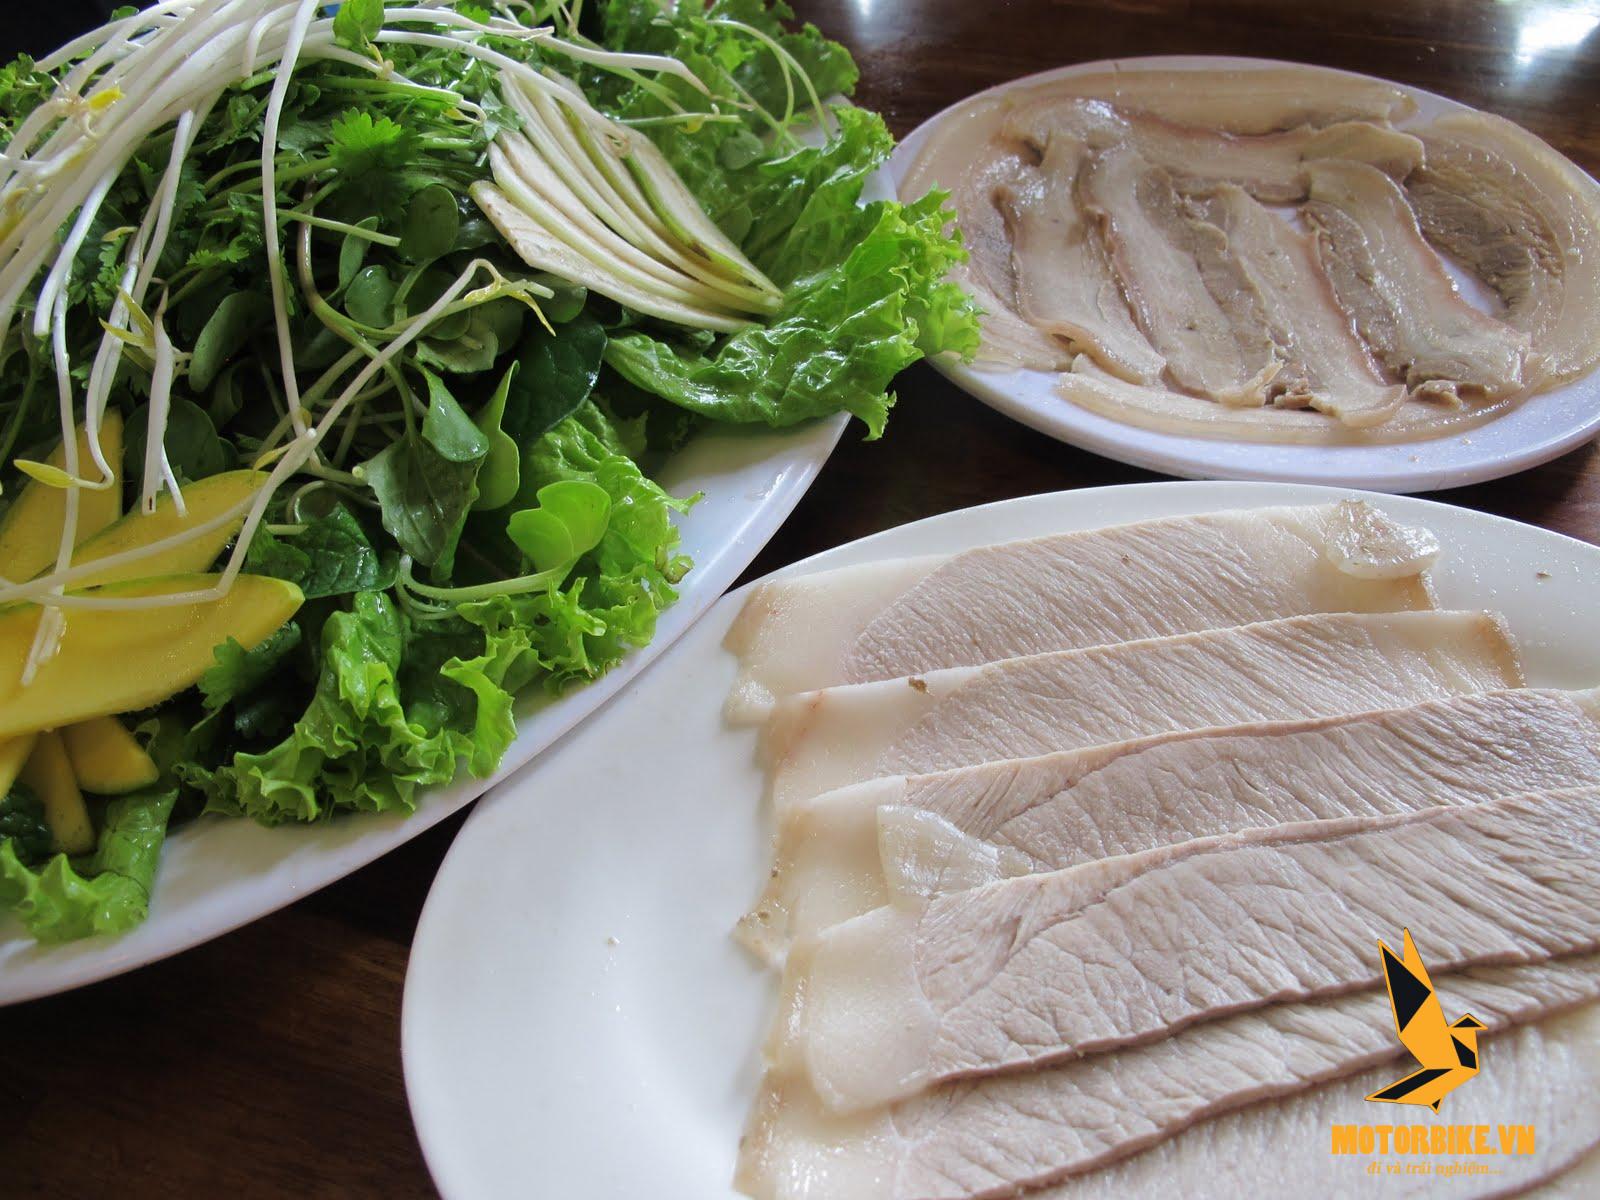 Quán bánh tráng cuốn thịt heo ở Đà Nẵng có gì khác biệt so với các tỉnh thành?